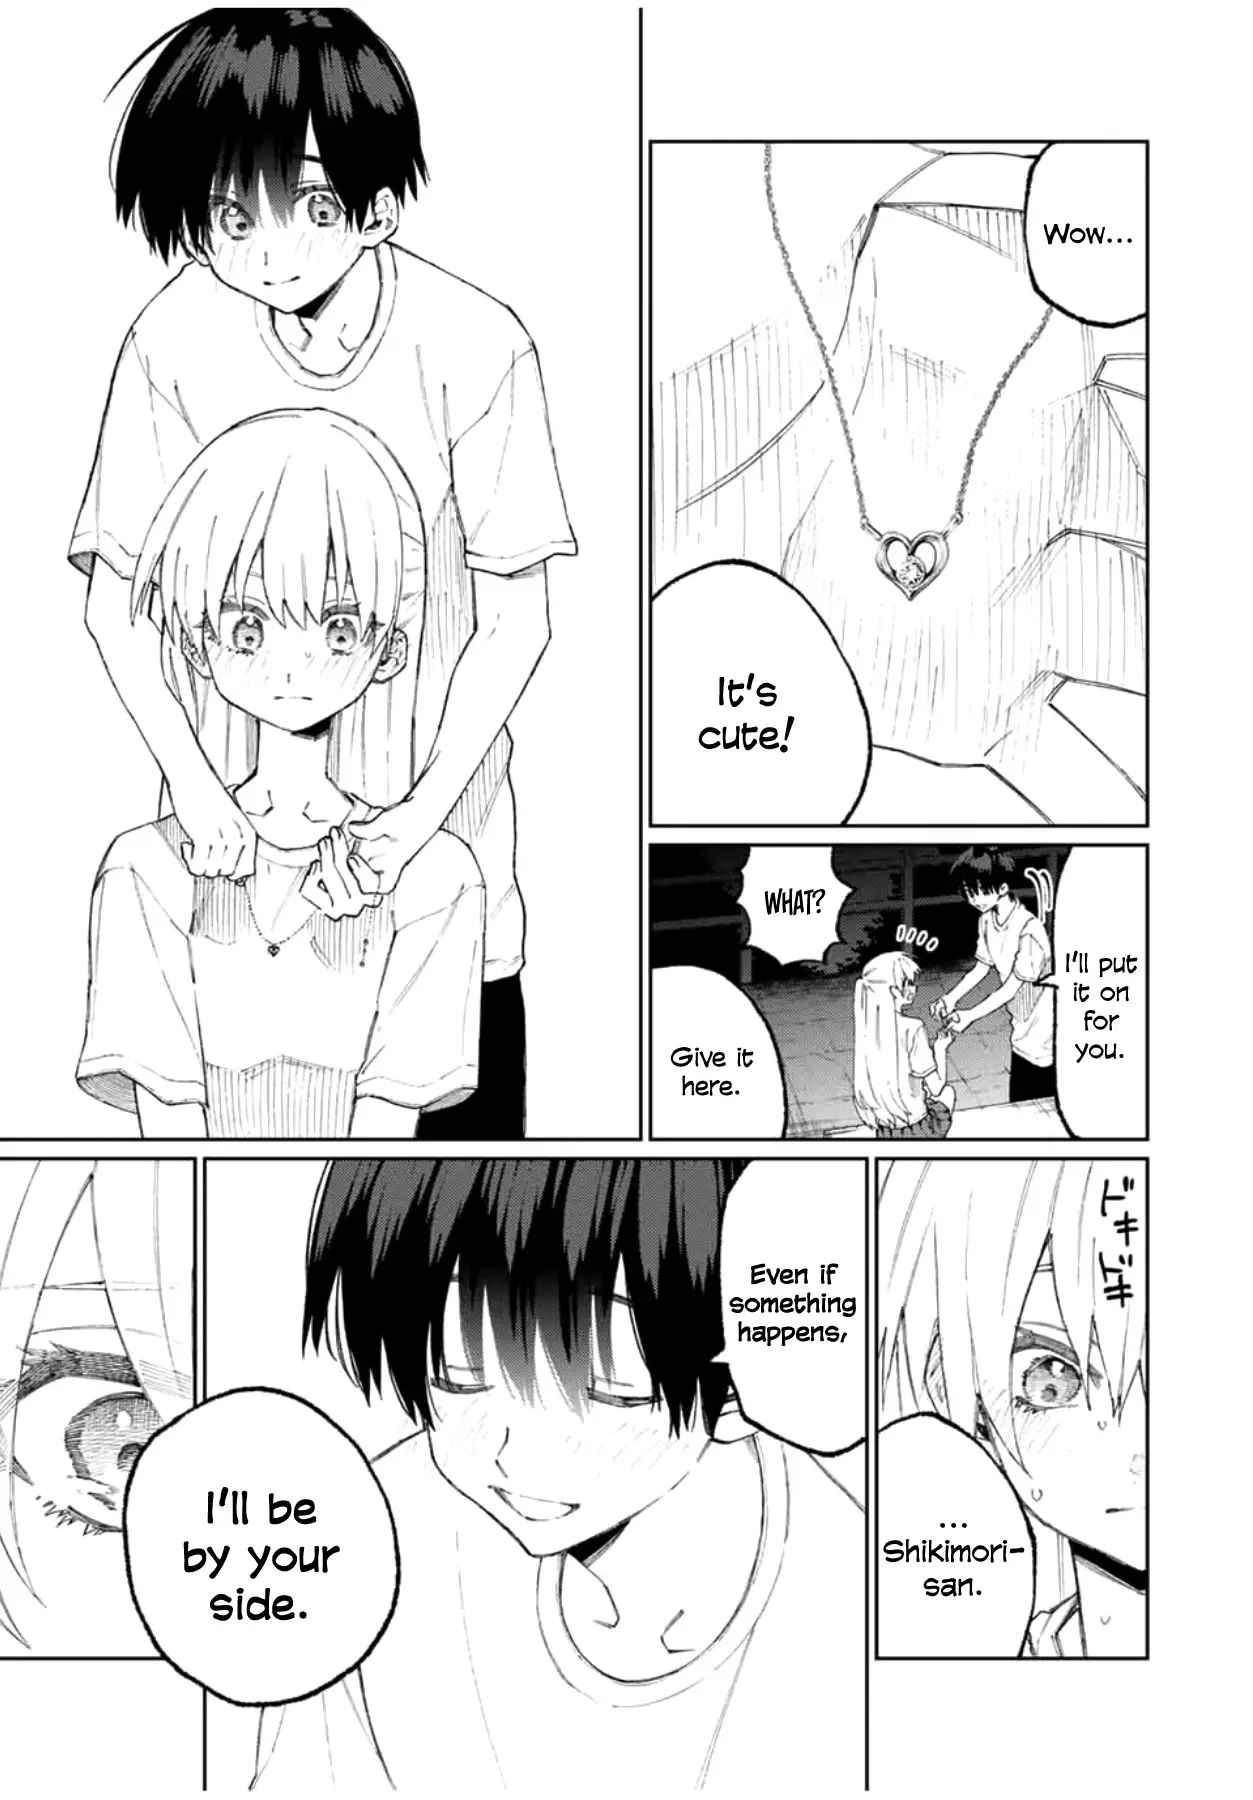 Shikimori's Not Just A Cutie - 44 page 8